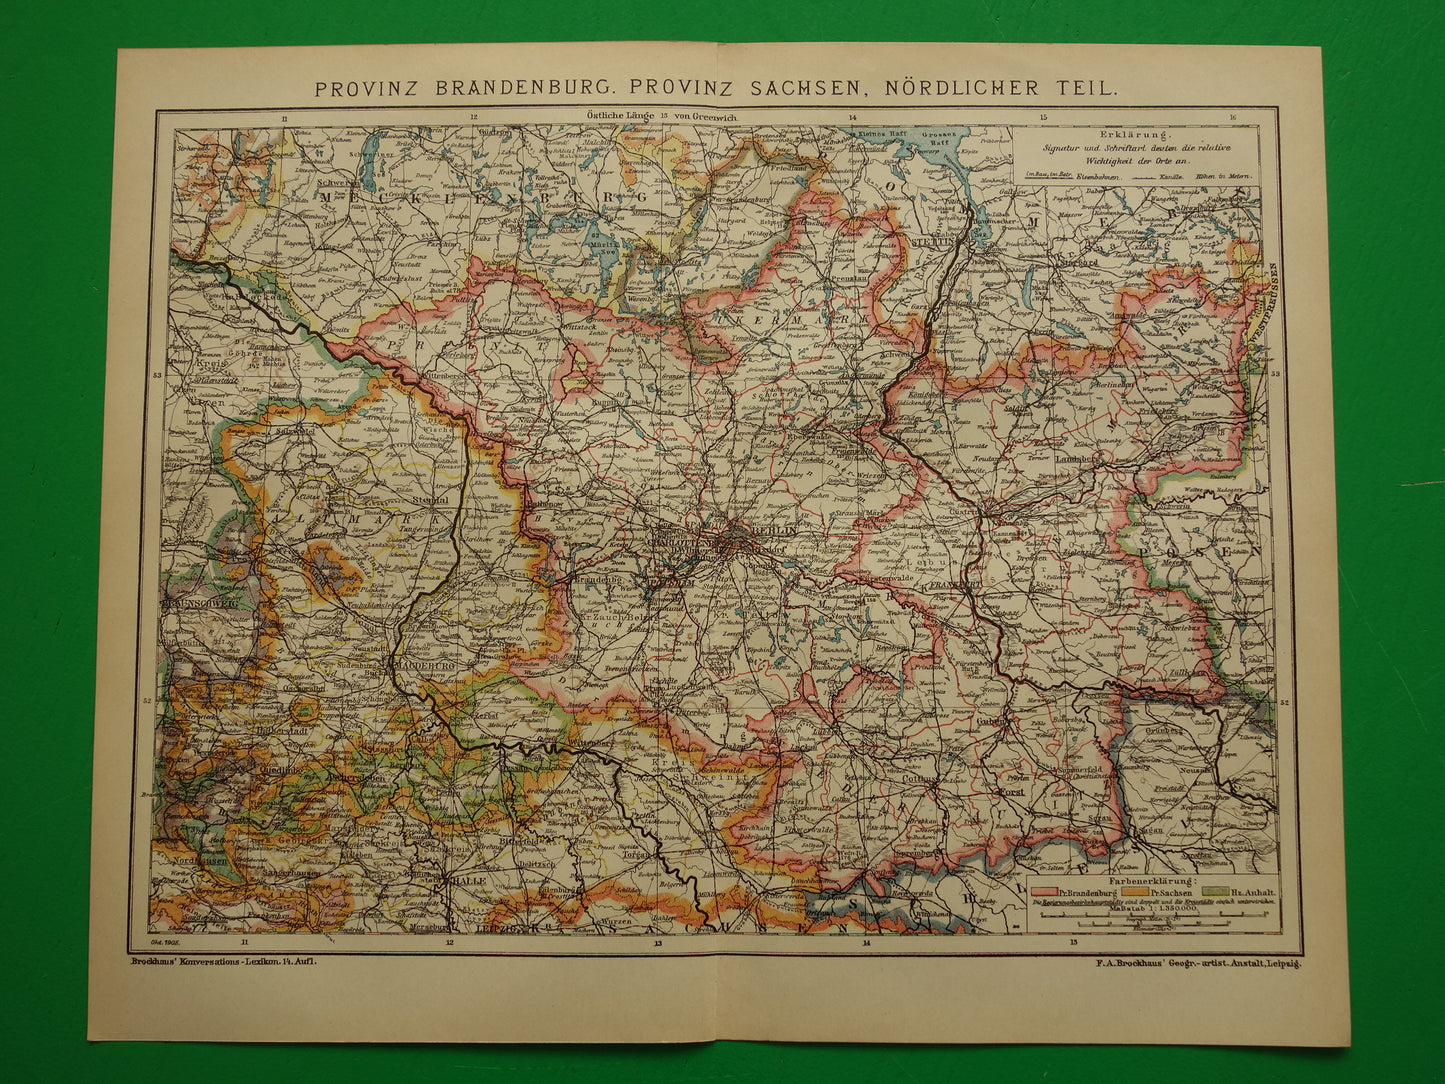 Brandenburg oude kaart van Berlijn en omgeving originele antieke landkaart provincie Brandenburg Saksen Duitsland vintage kaarten met jaartal